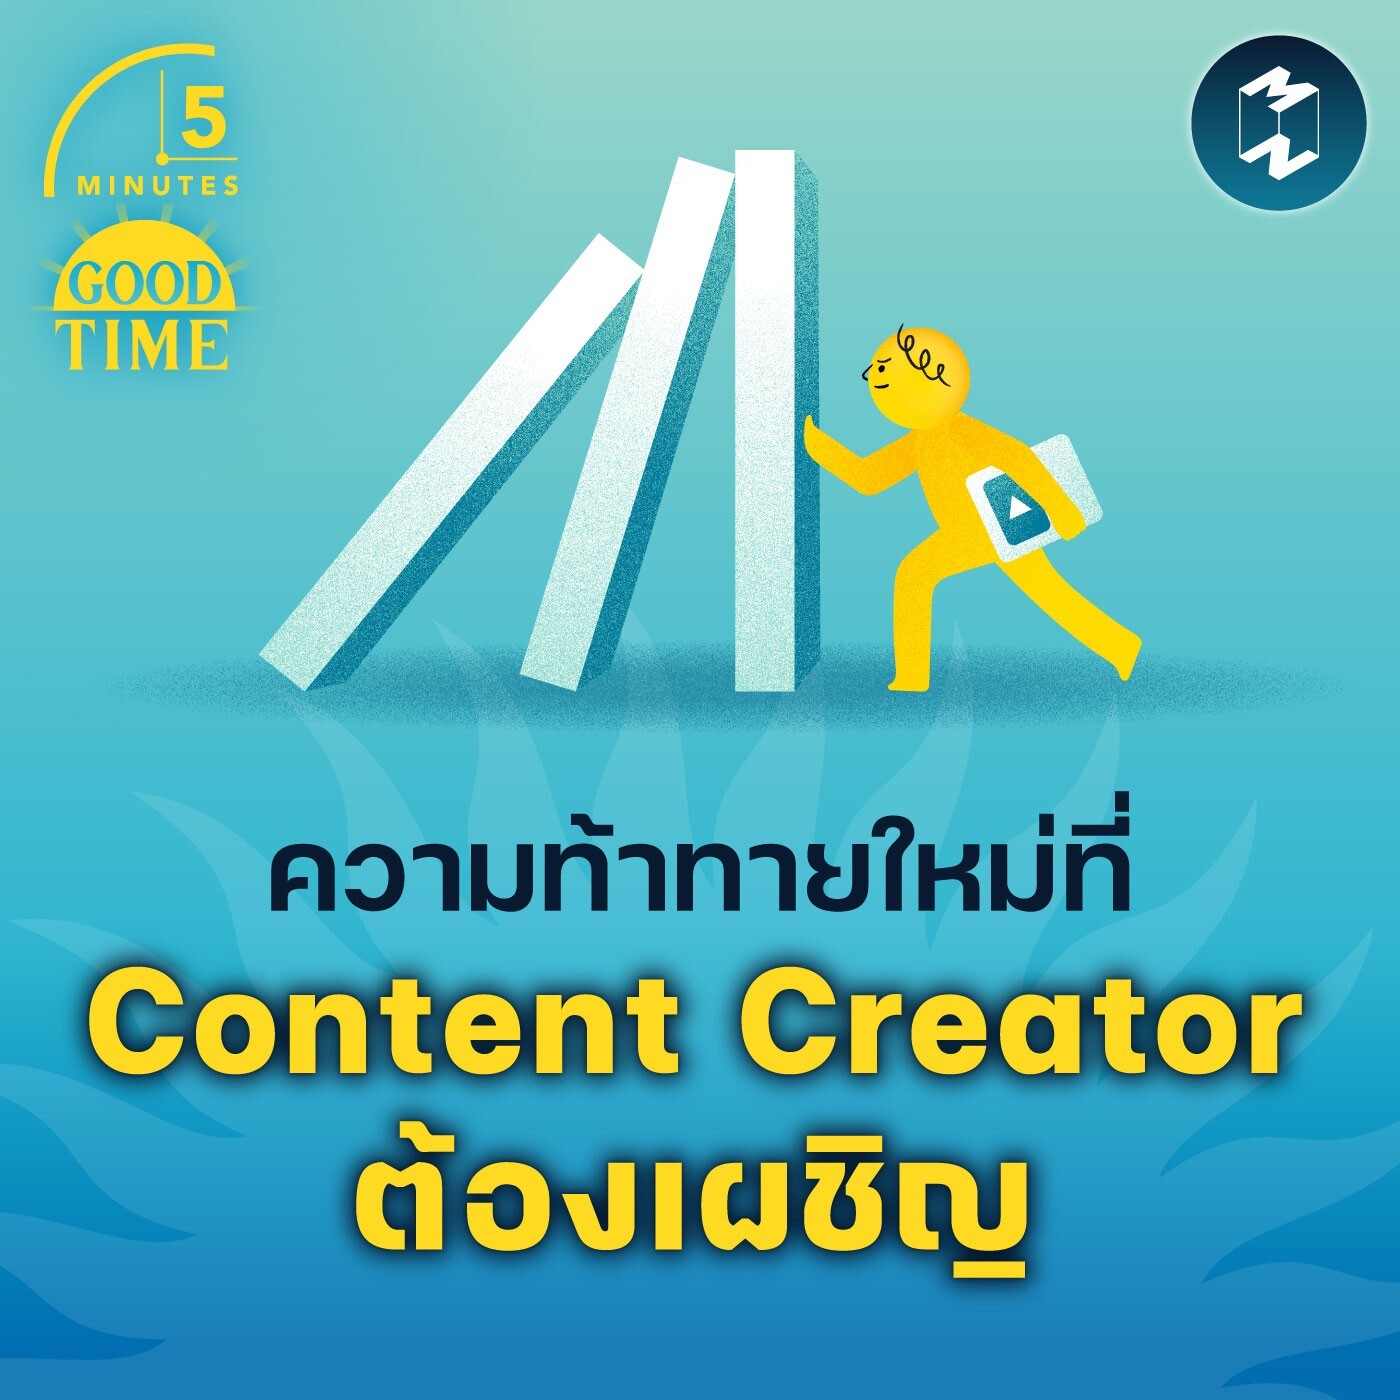 ความท้าทายใหม่ที่ Content Creator ต้องเผชิญ | 5M EP.1757